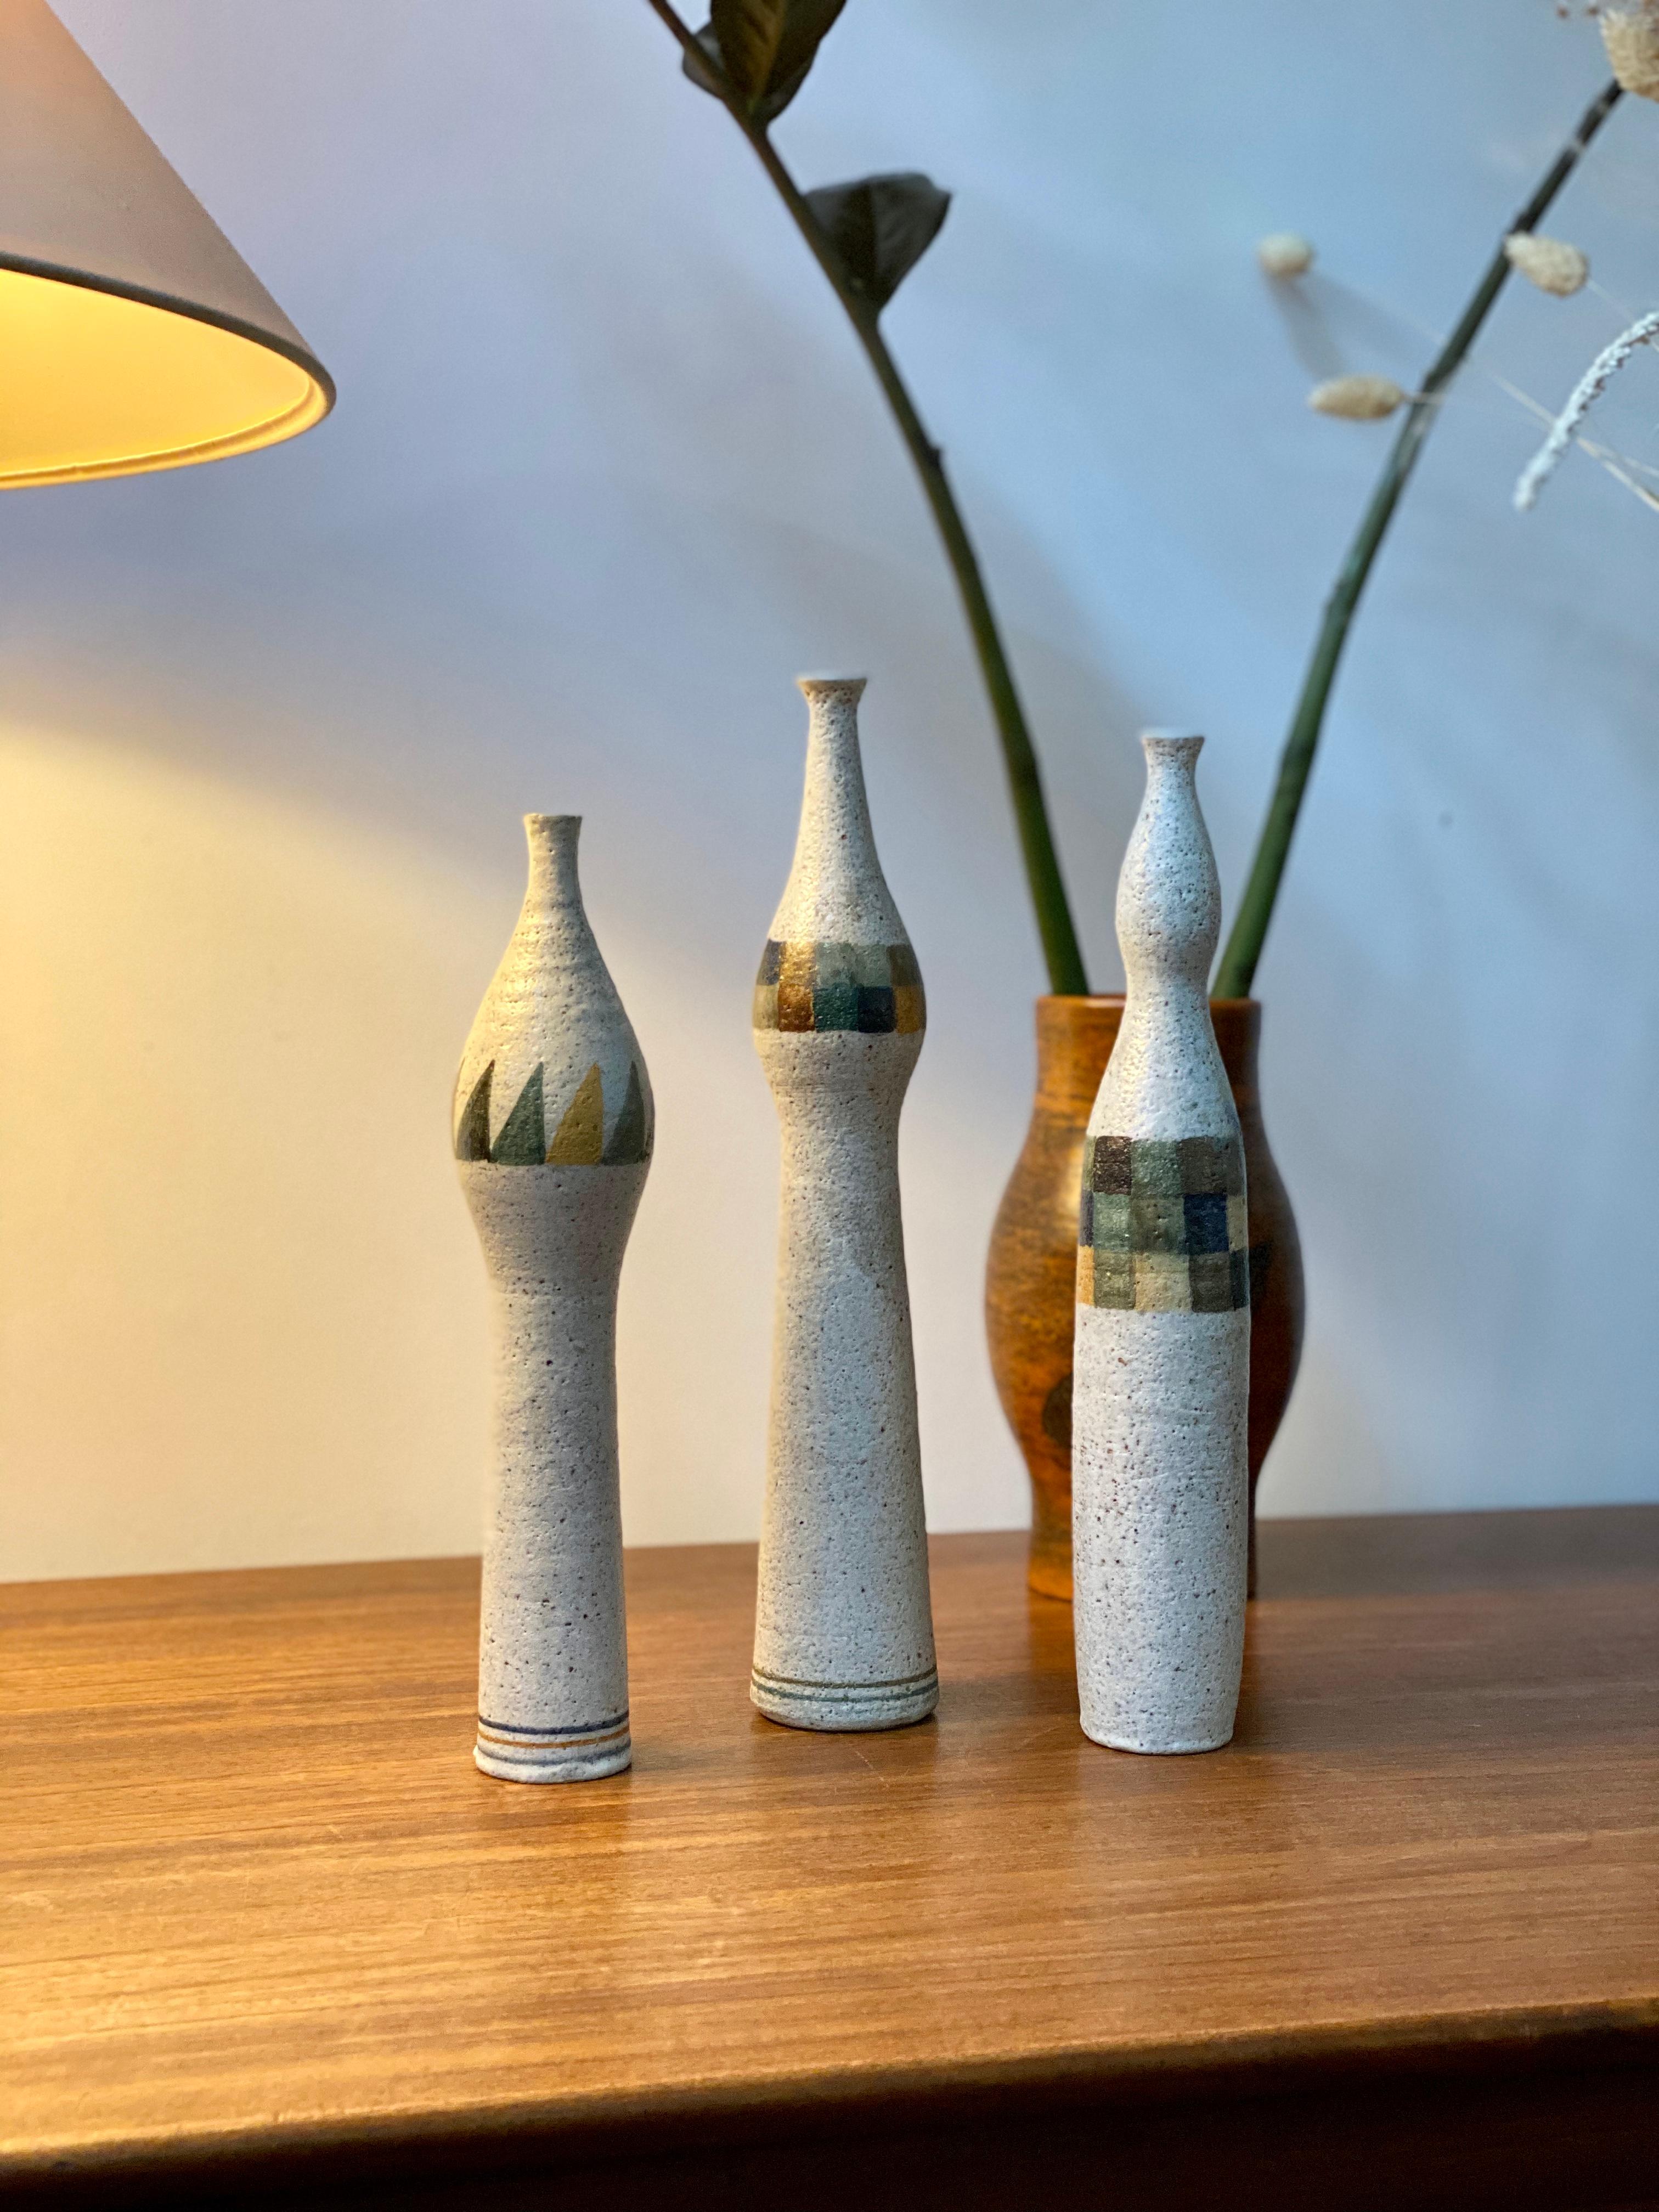 Ensemble de trois vases à fleur unique en forme de bouteille par Bruno Gambone (vers les années 1990). Les trois pièces sont en grès émaillé et présentent des motifs géométriques modernes et multicolores. Le vase de taille moyenne présente une